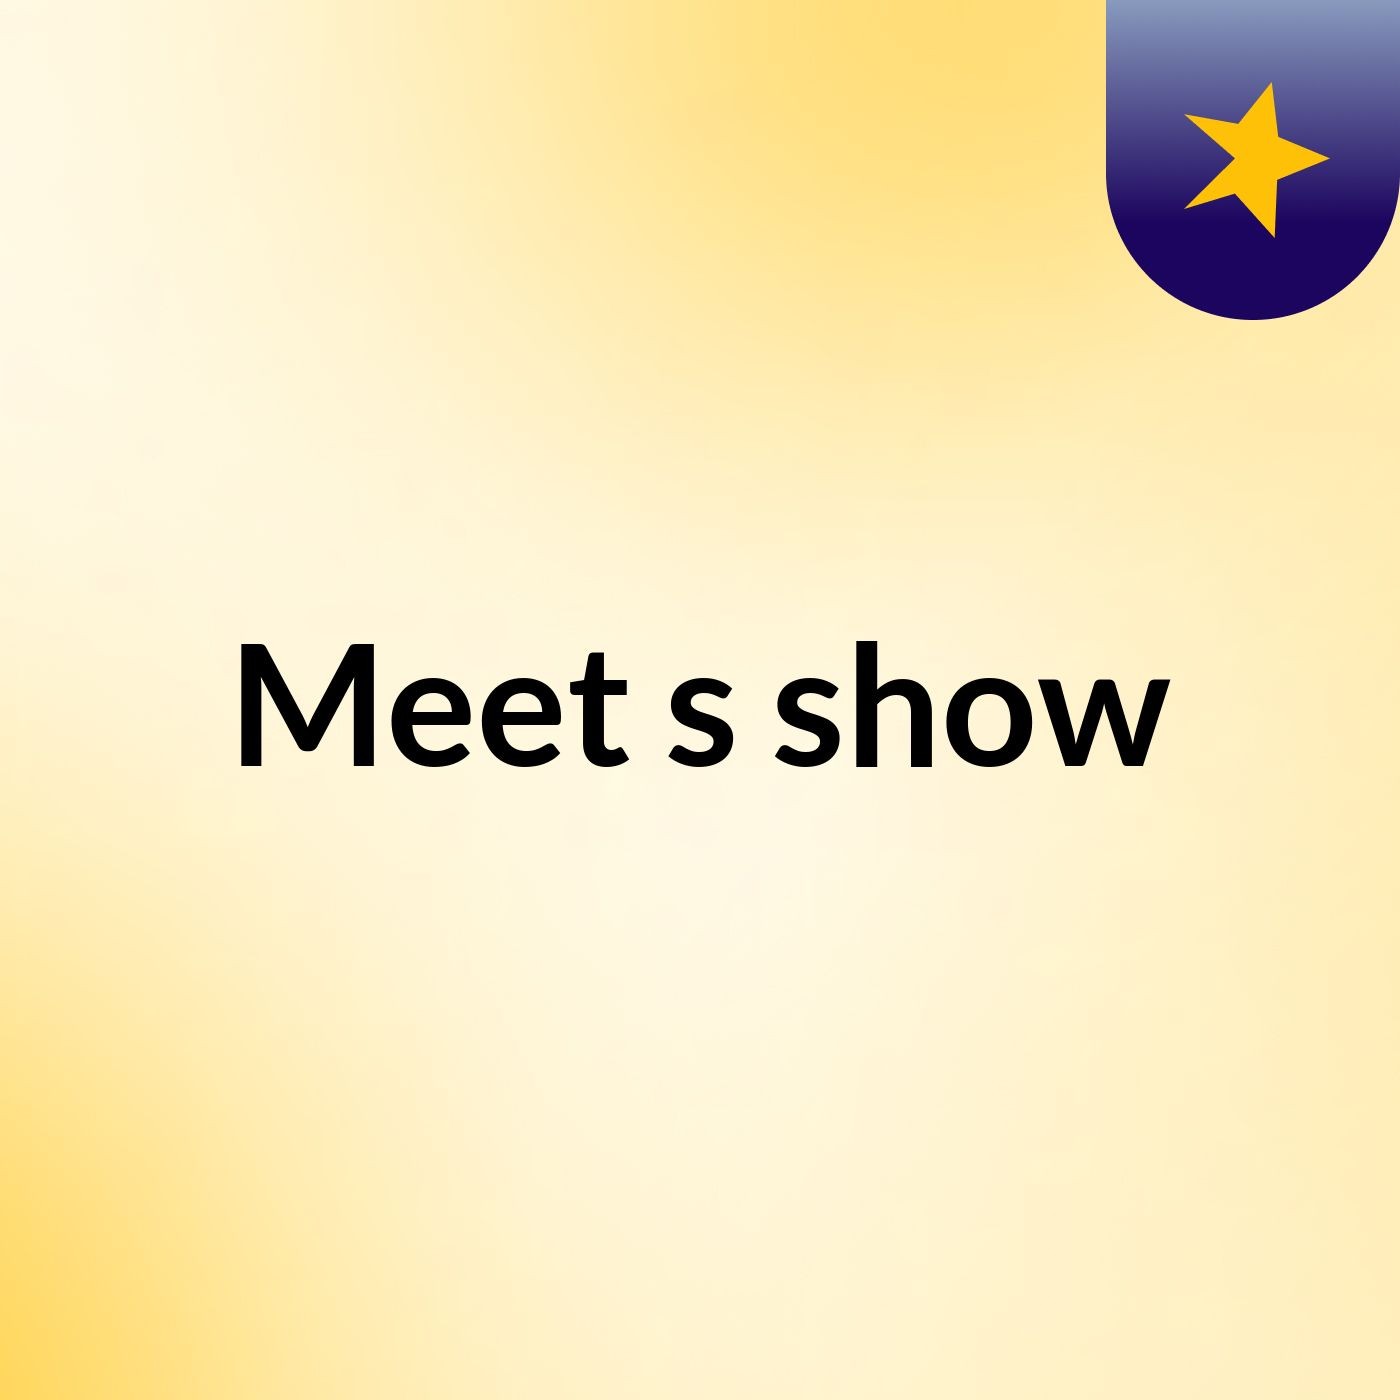 Meet's show